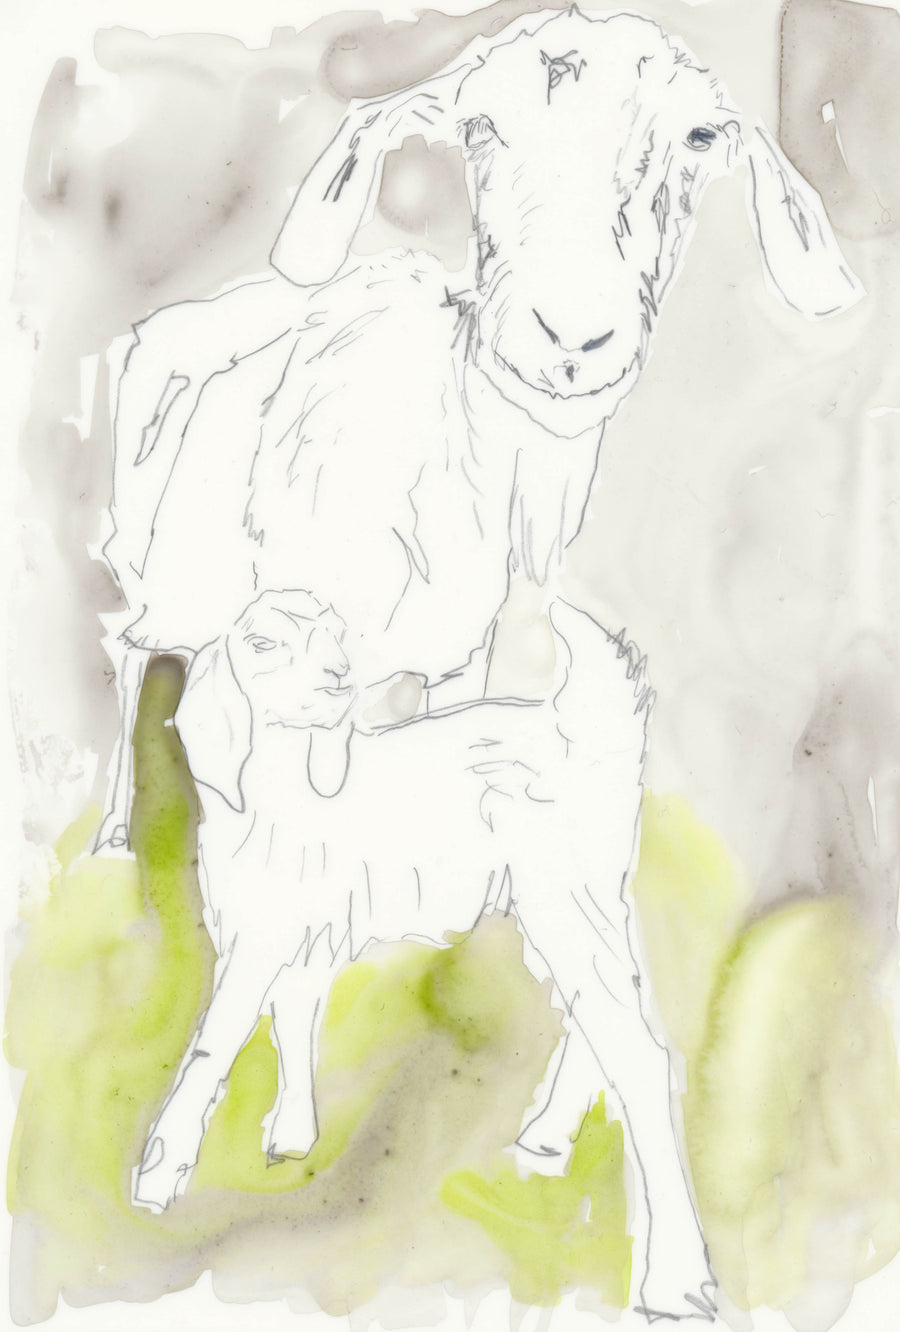 Original Goat Drawing